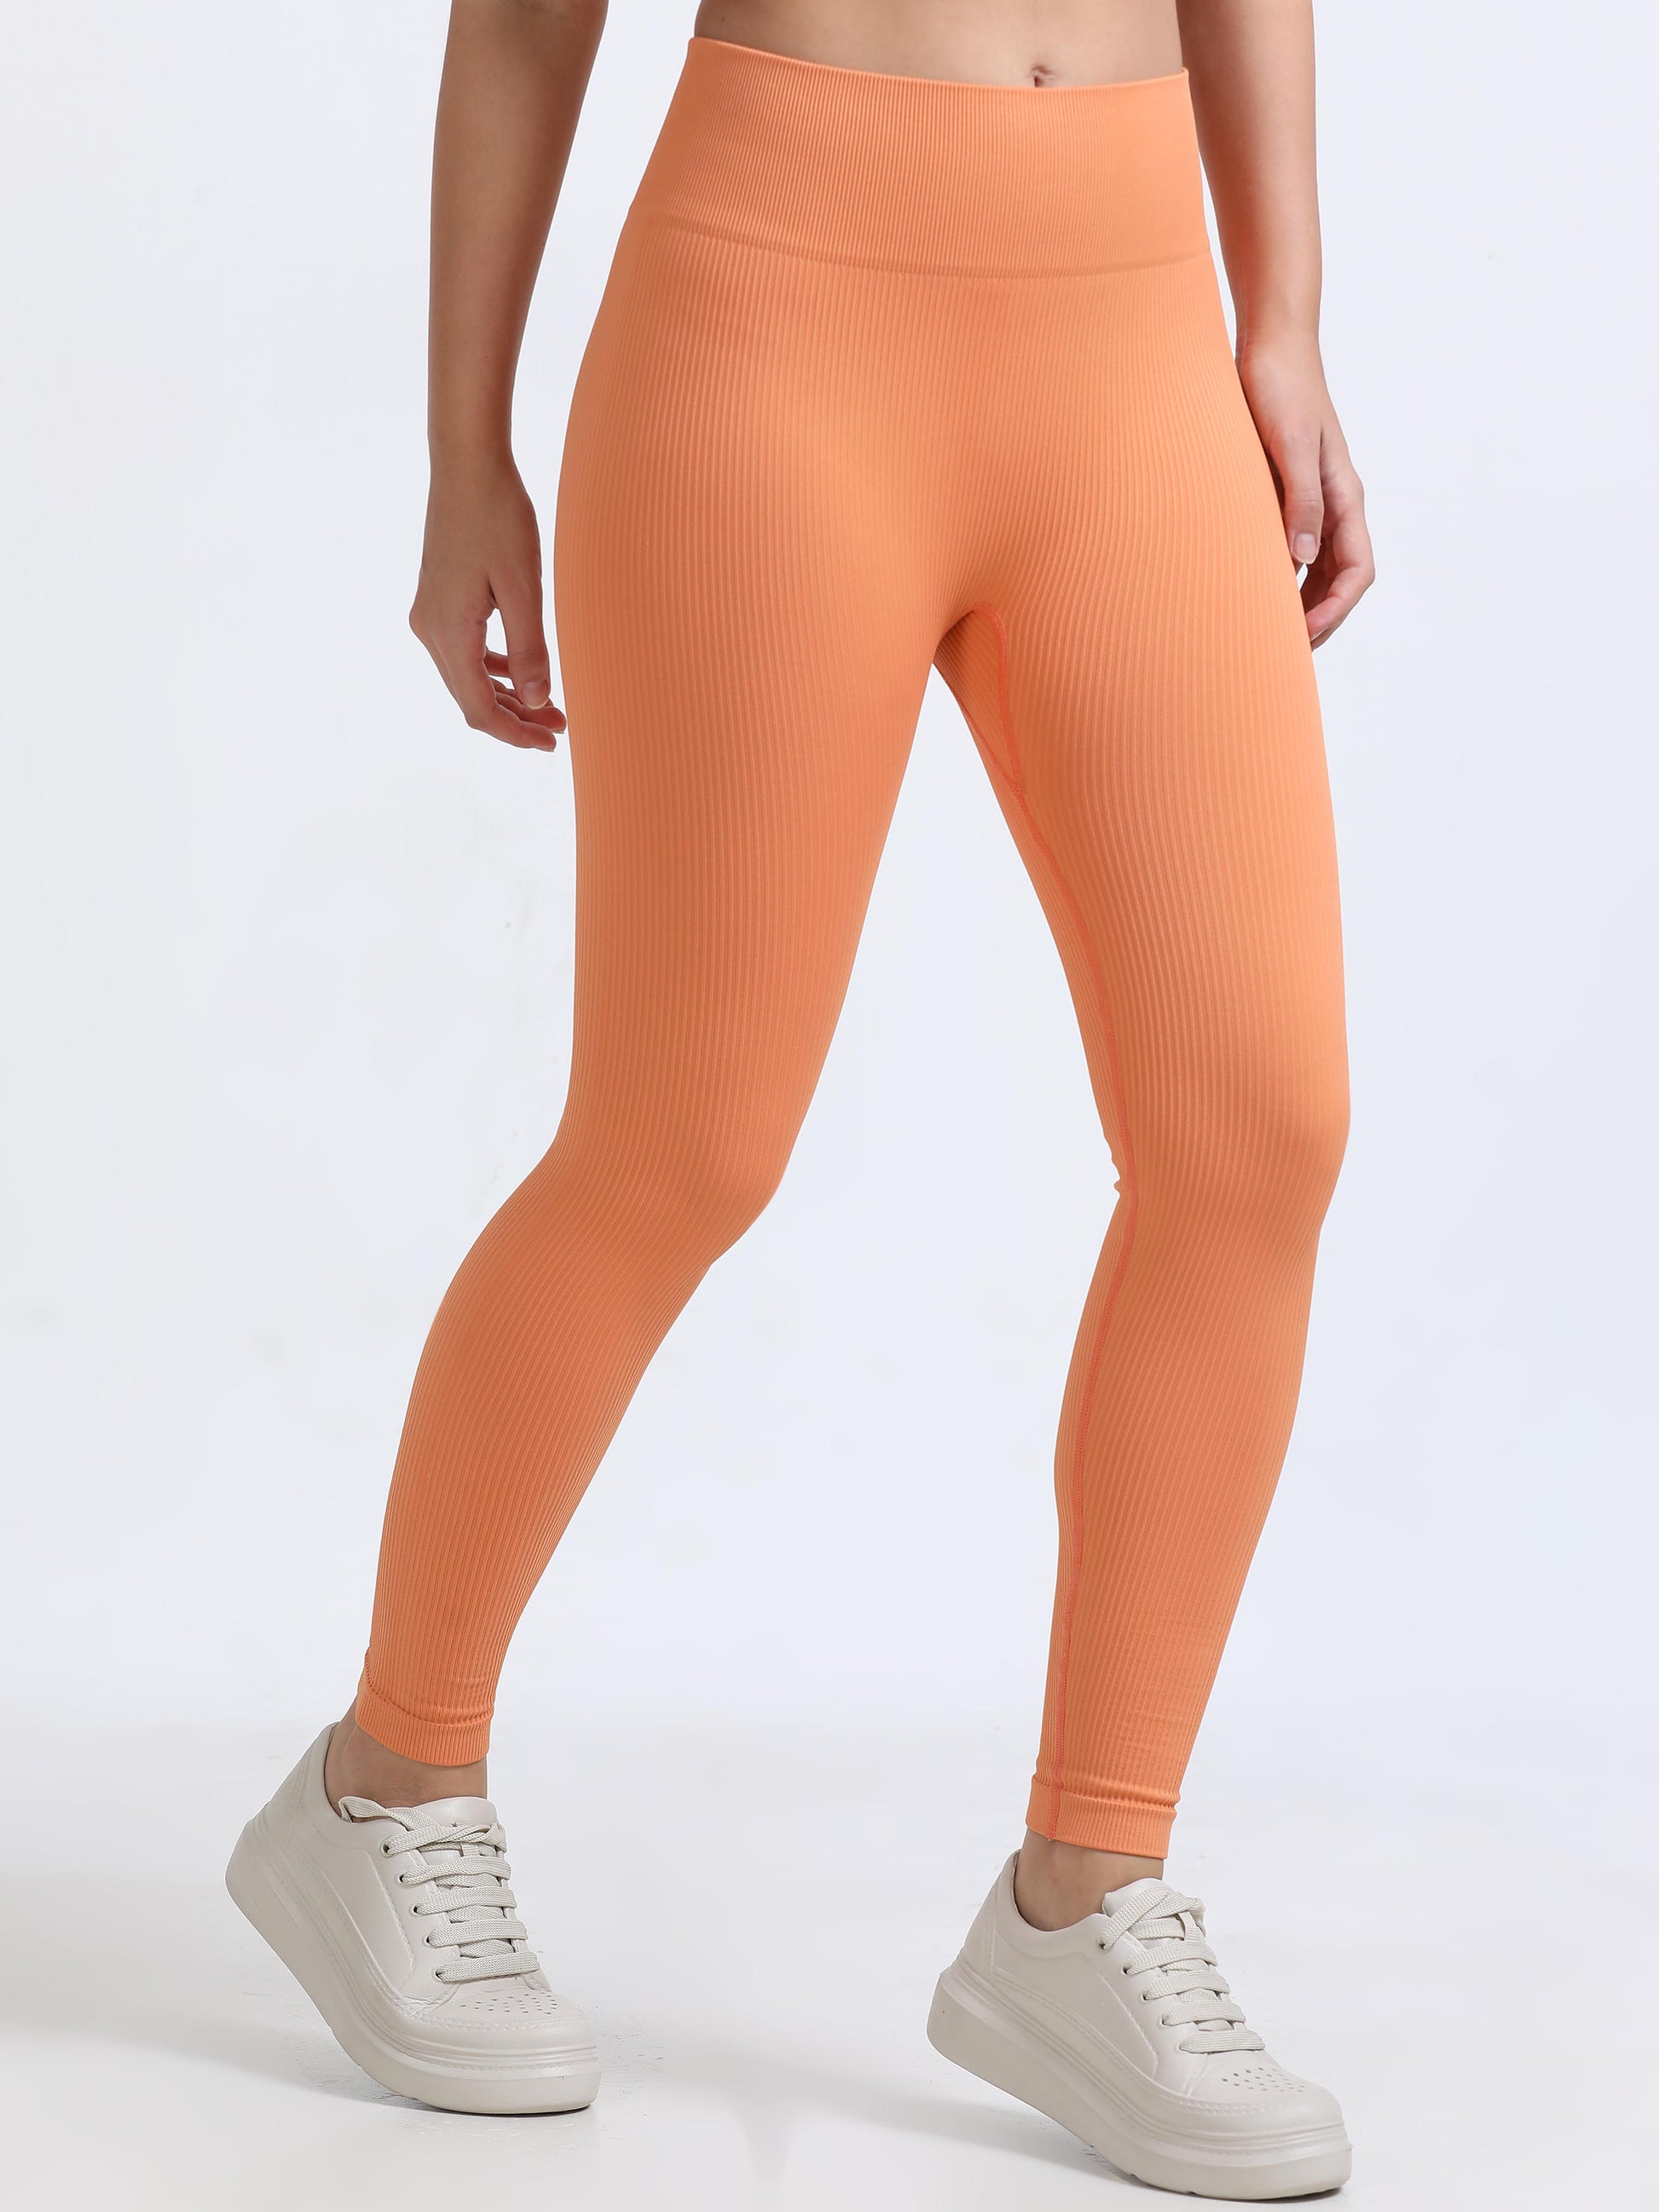 Orange Colour Leggings For Women